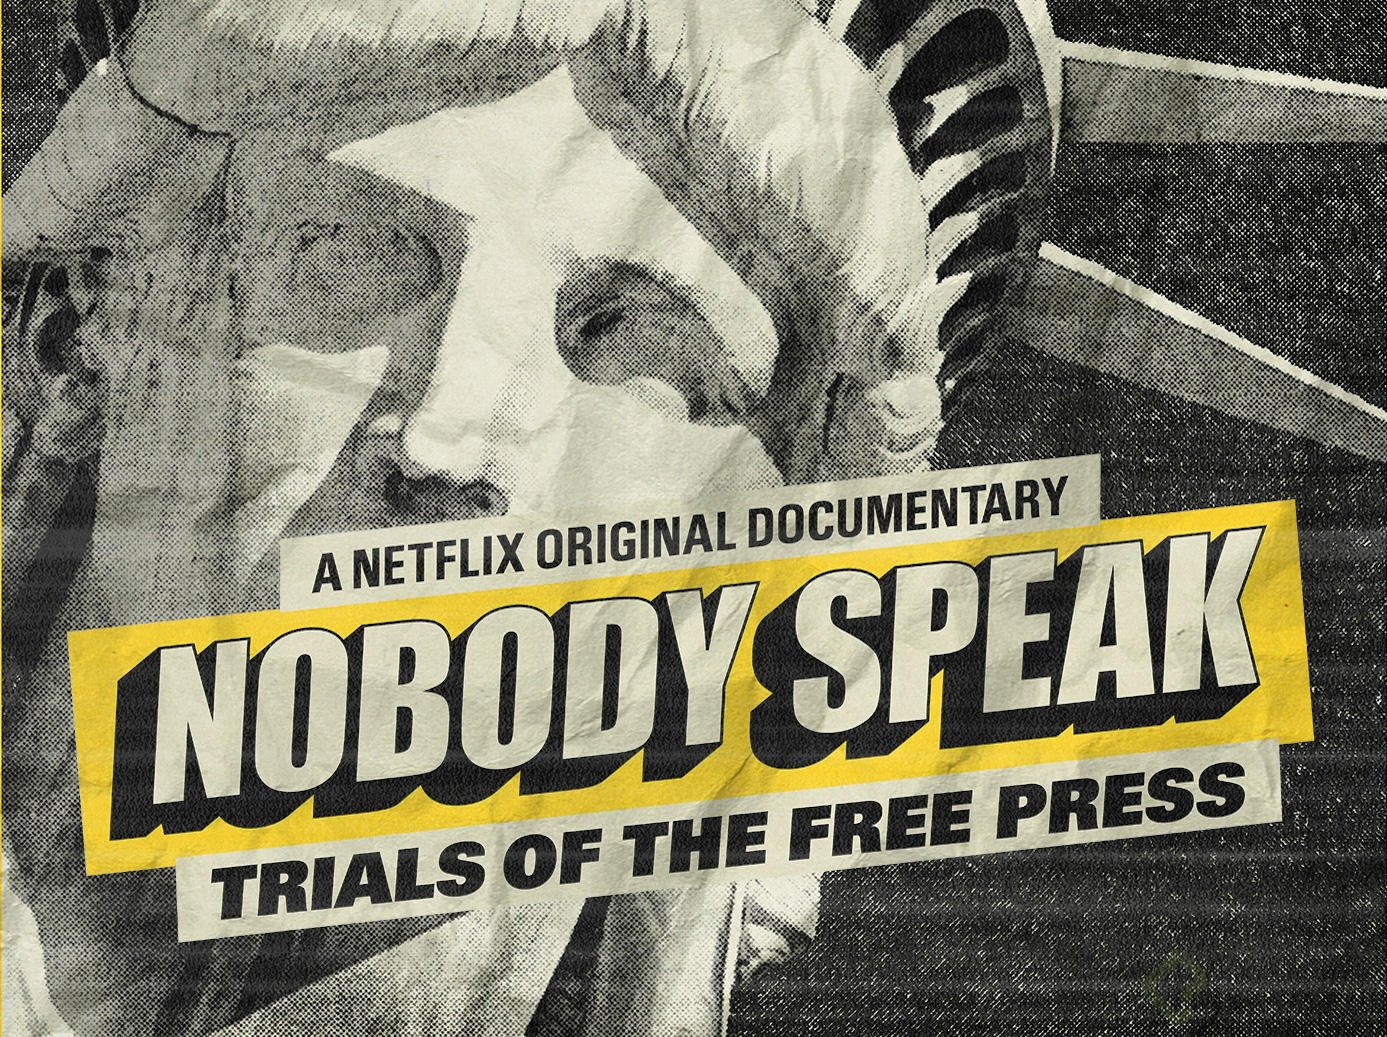 NobodySpeak-documental-netflix.jpg